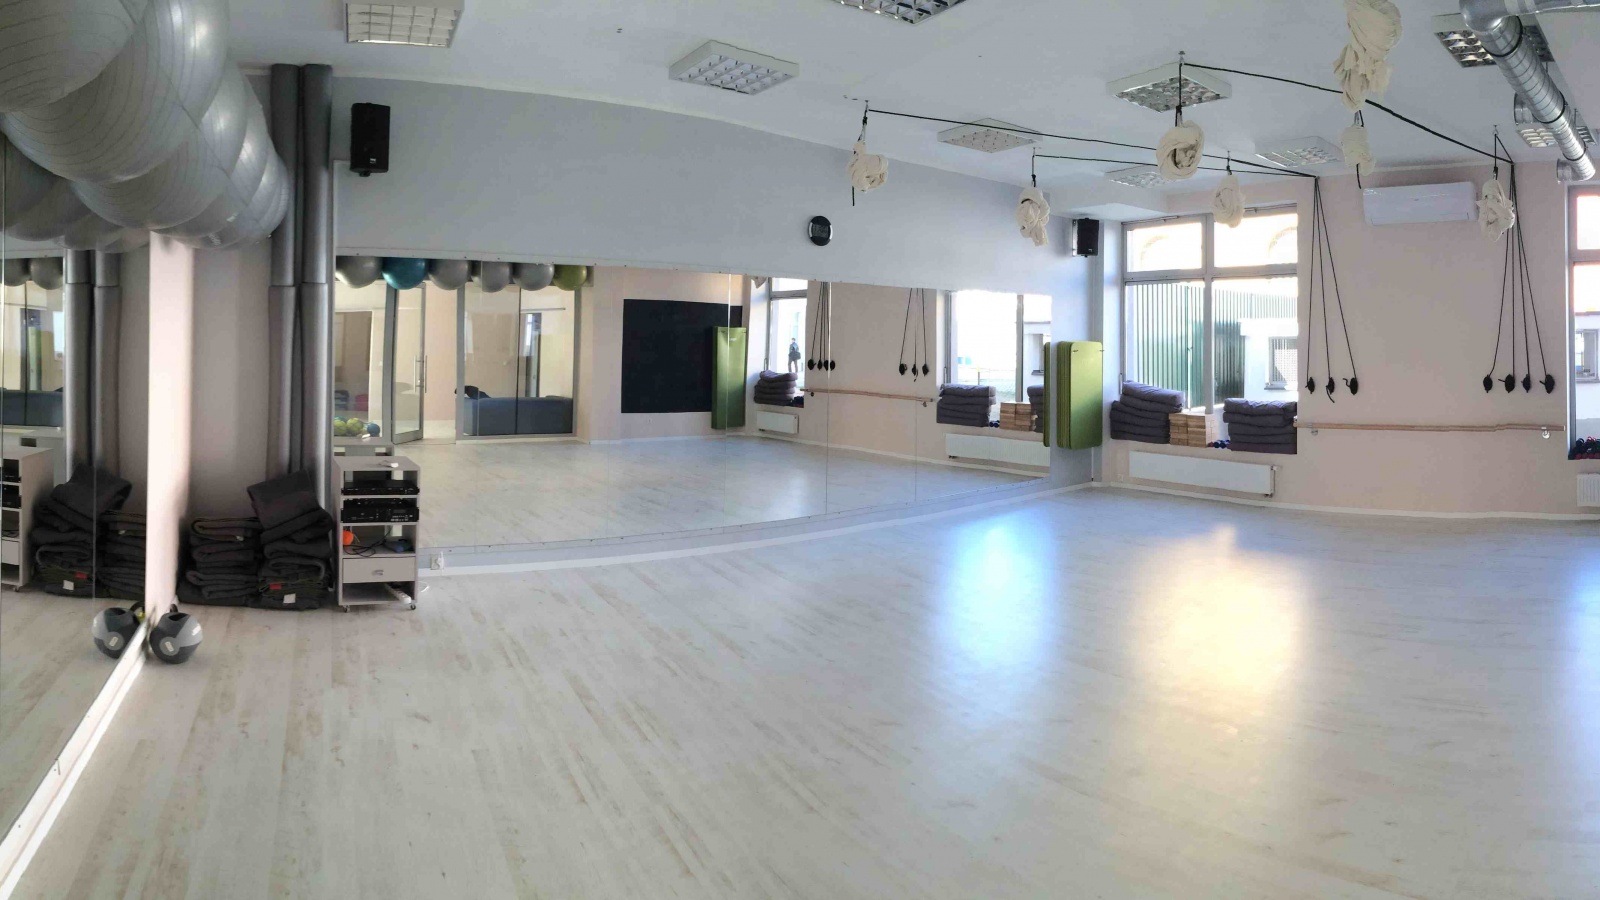 Ultrafit Studio Tańca i Fitness - płaski brzuch Wrocław